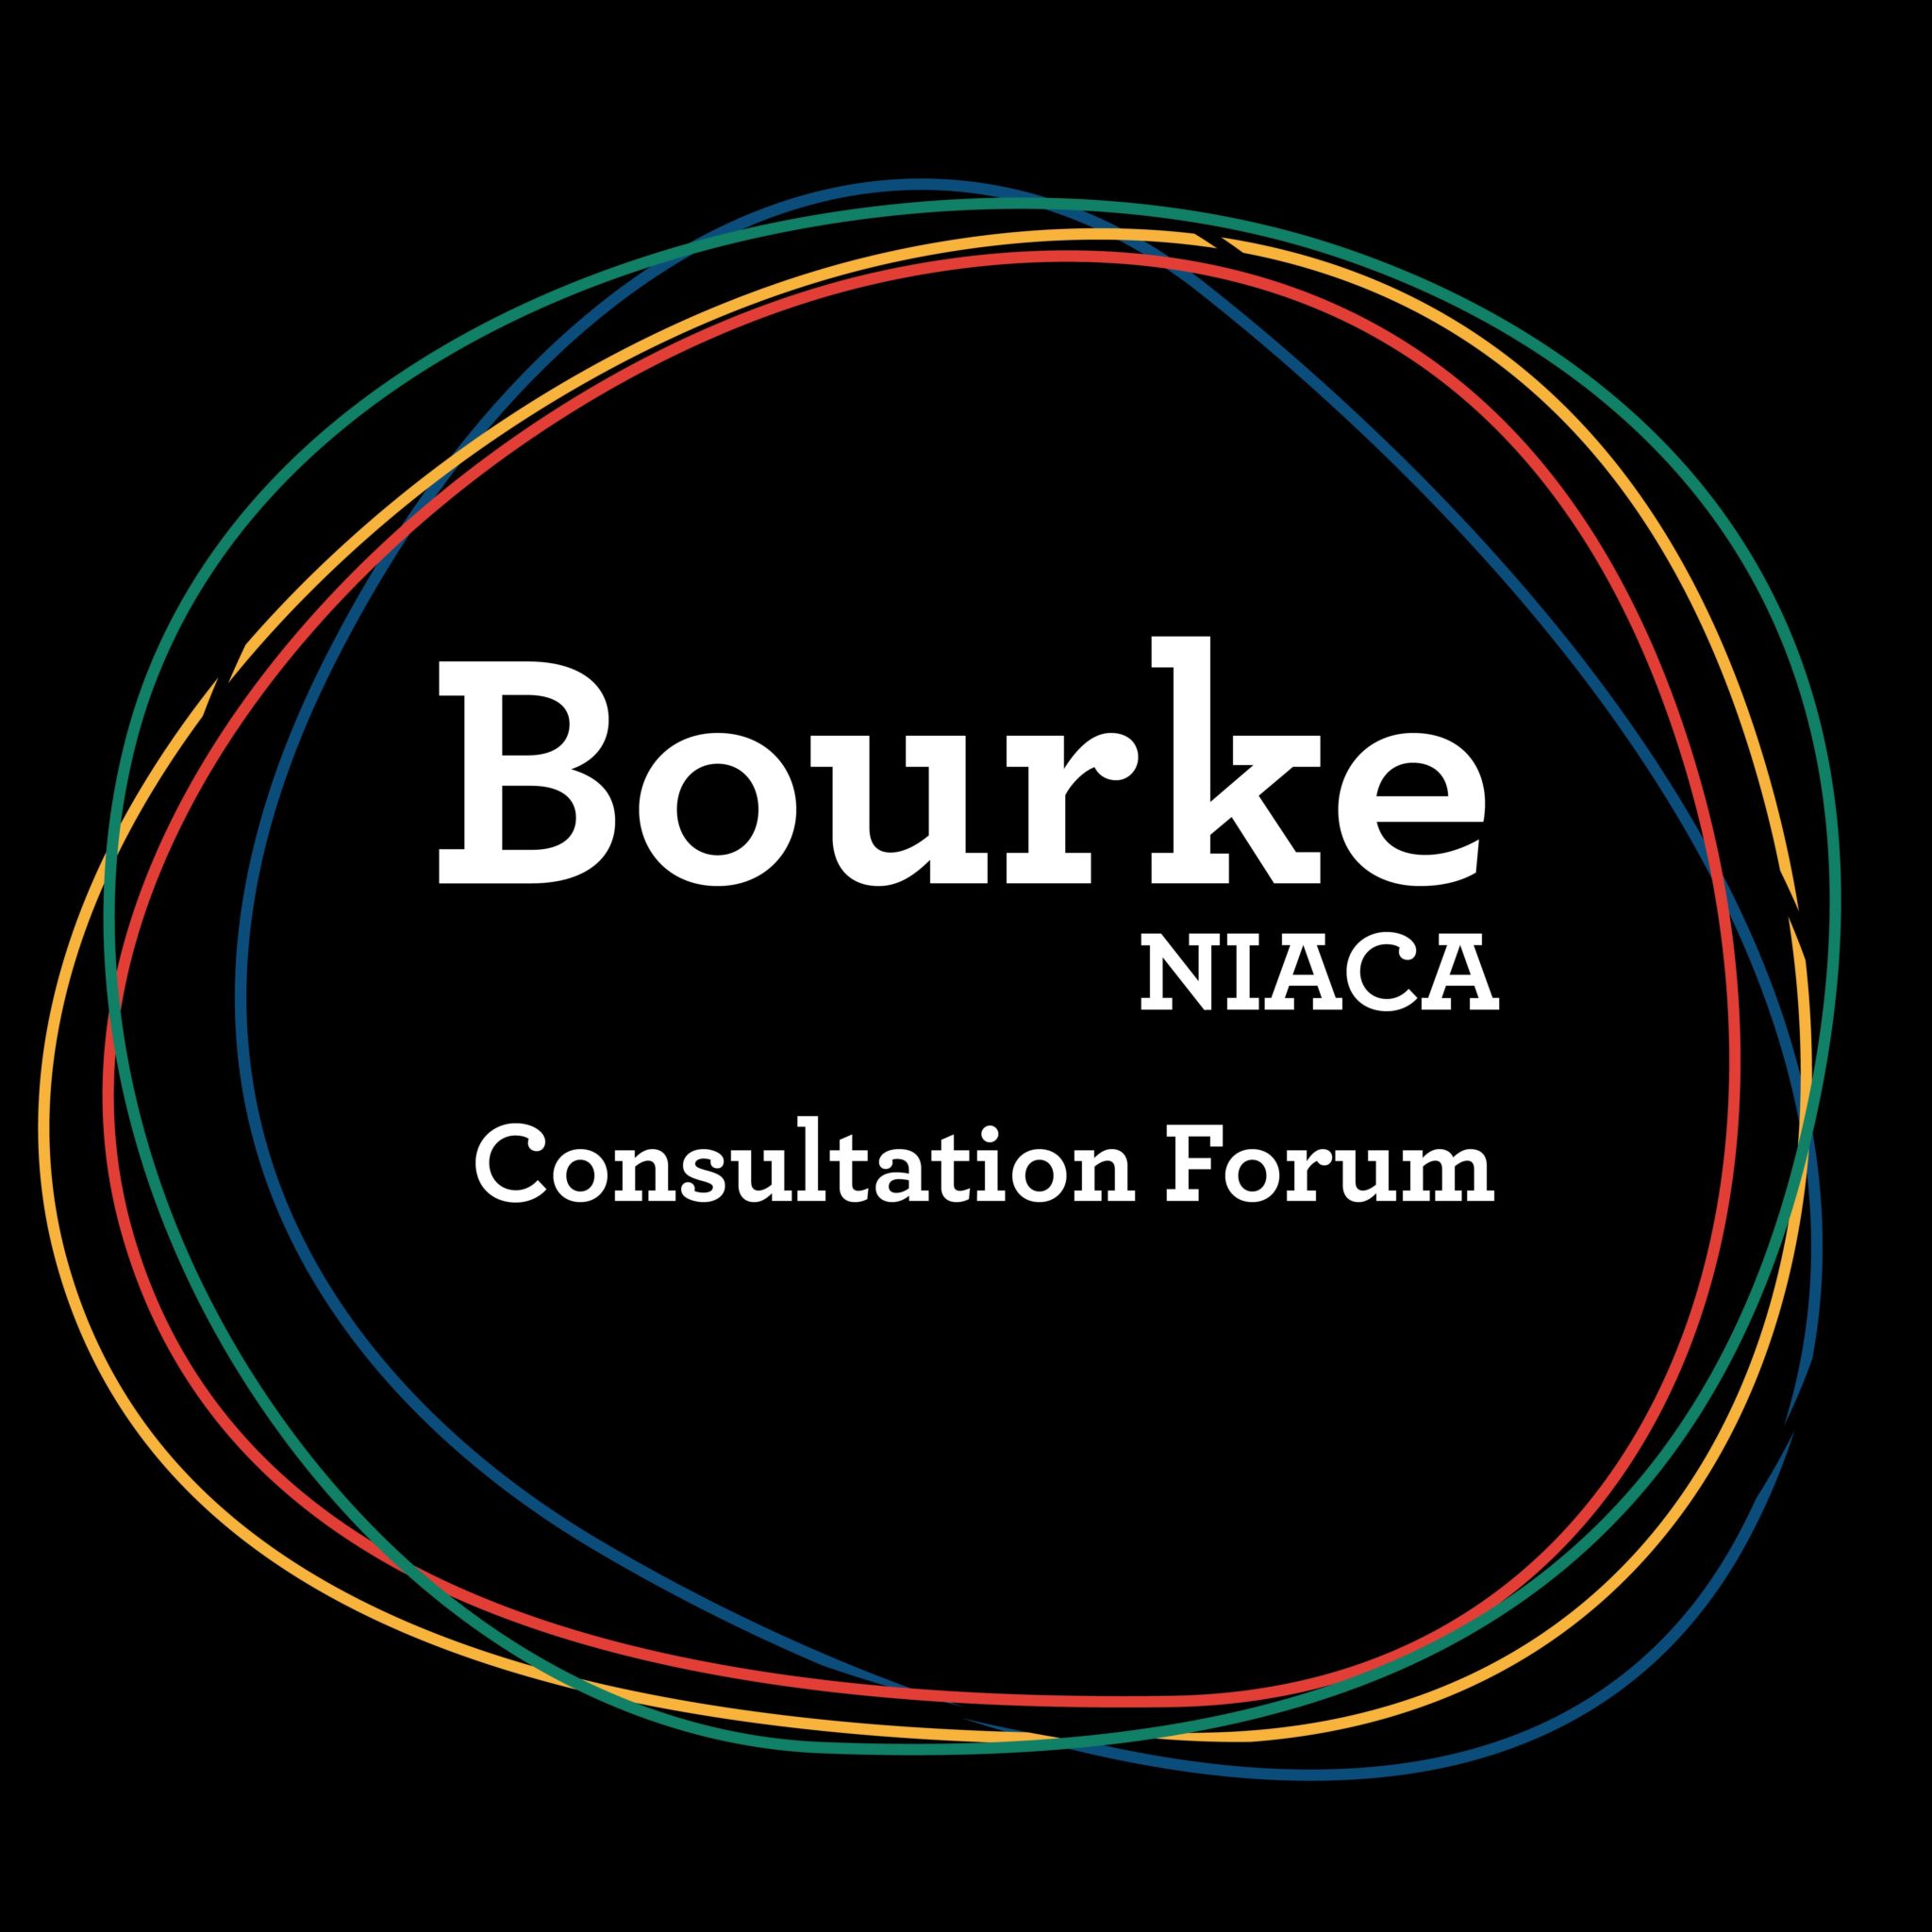 Bourke- NIACA Consultation Forum